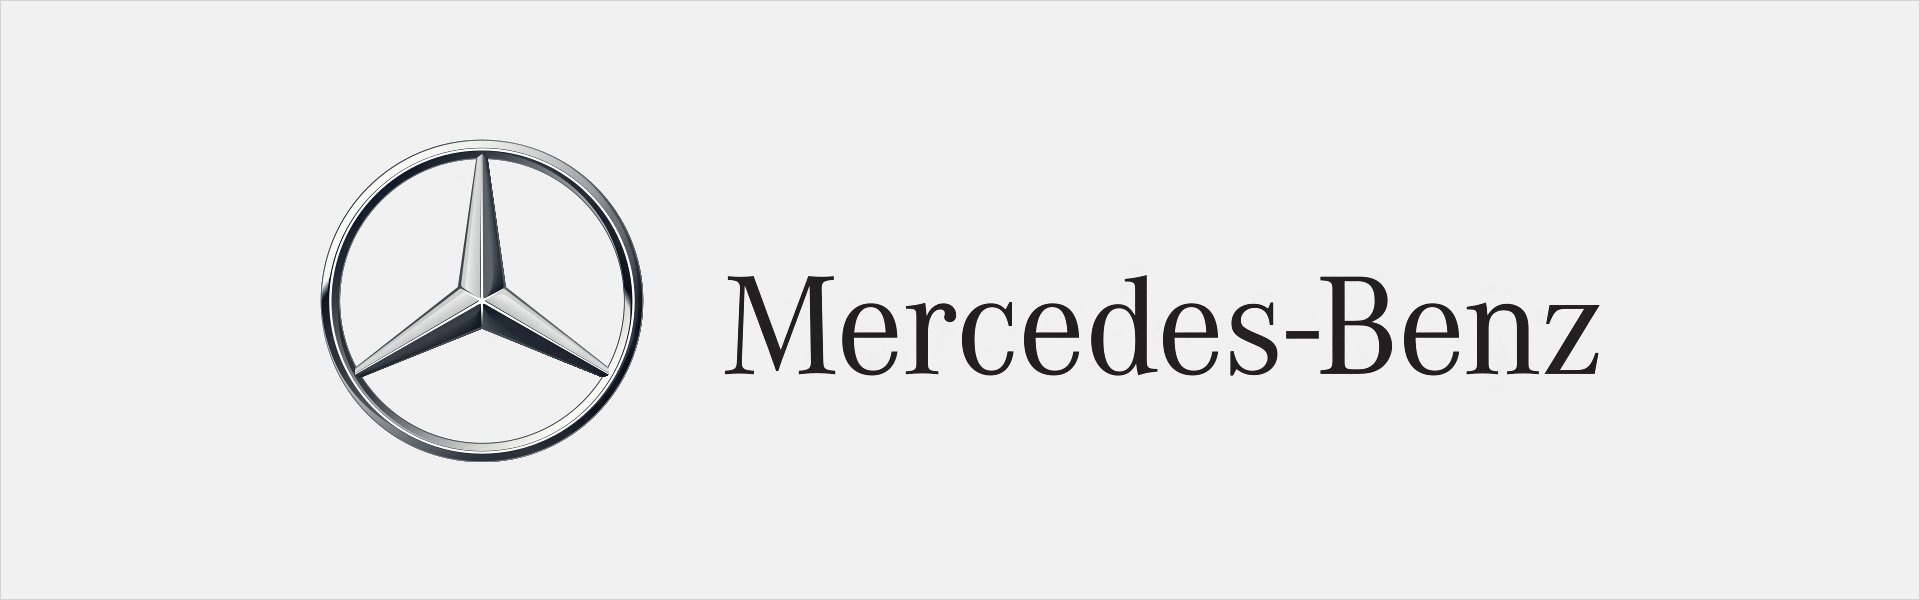 Mercedes-Benz Le Parfum Mercedes-Benz - EDP Mercedes-Benz